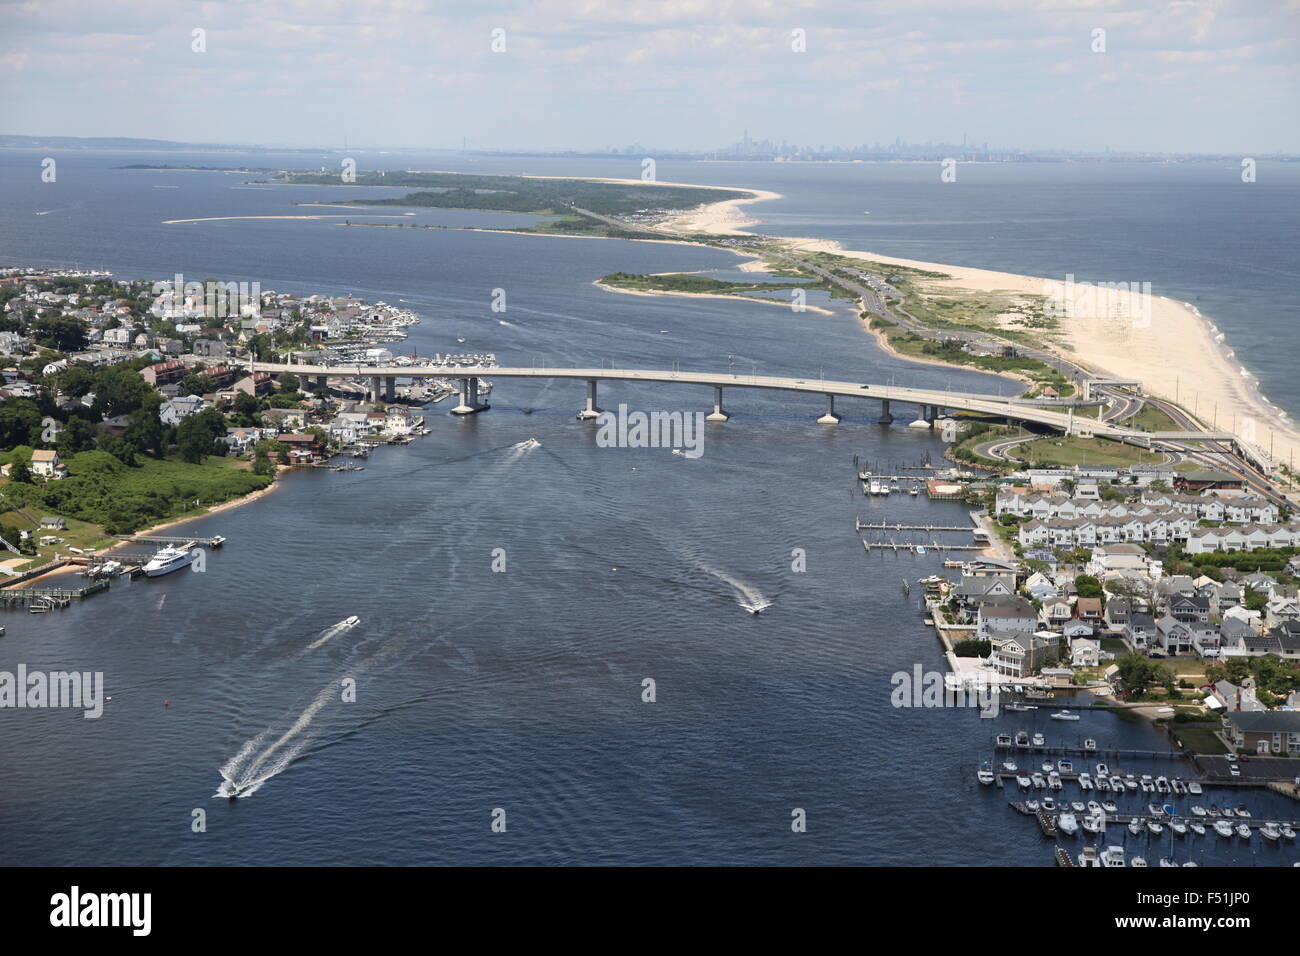 Vista aérea del mar brillante y el puente sobre el río Navesink y Sandy Hook, en Nueva Jersey (post huracán arenoso) Foto de stock